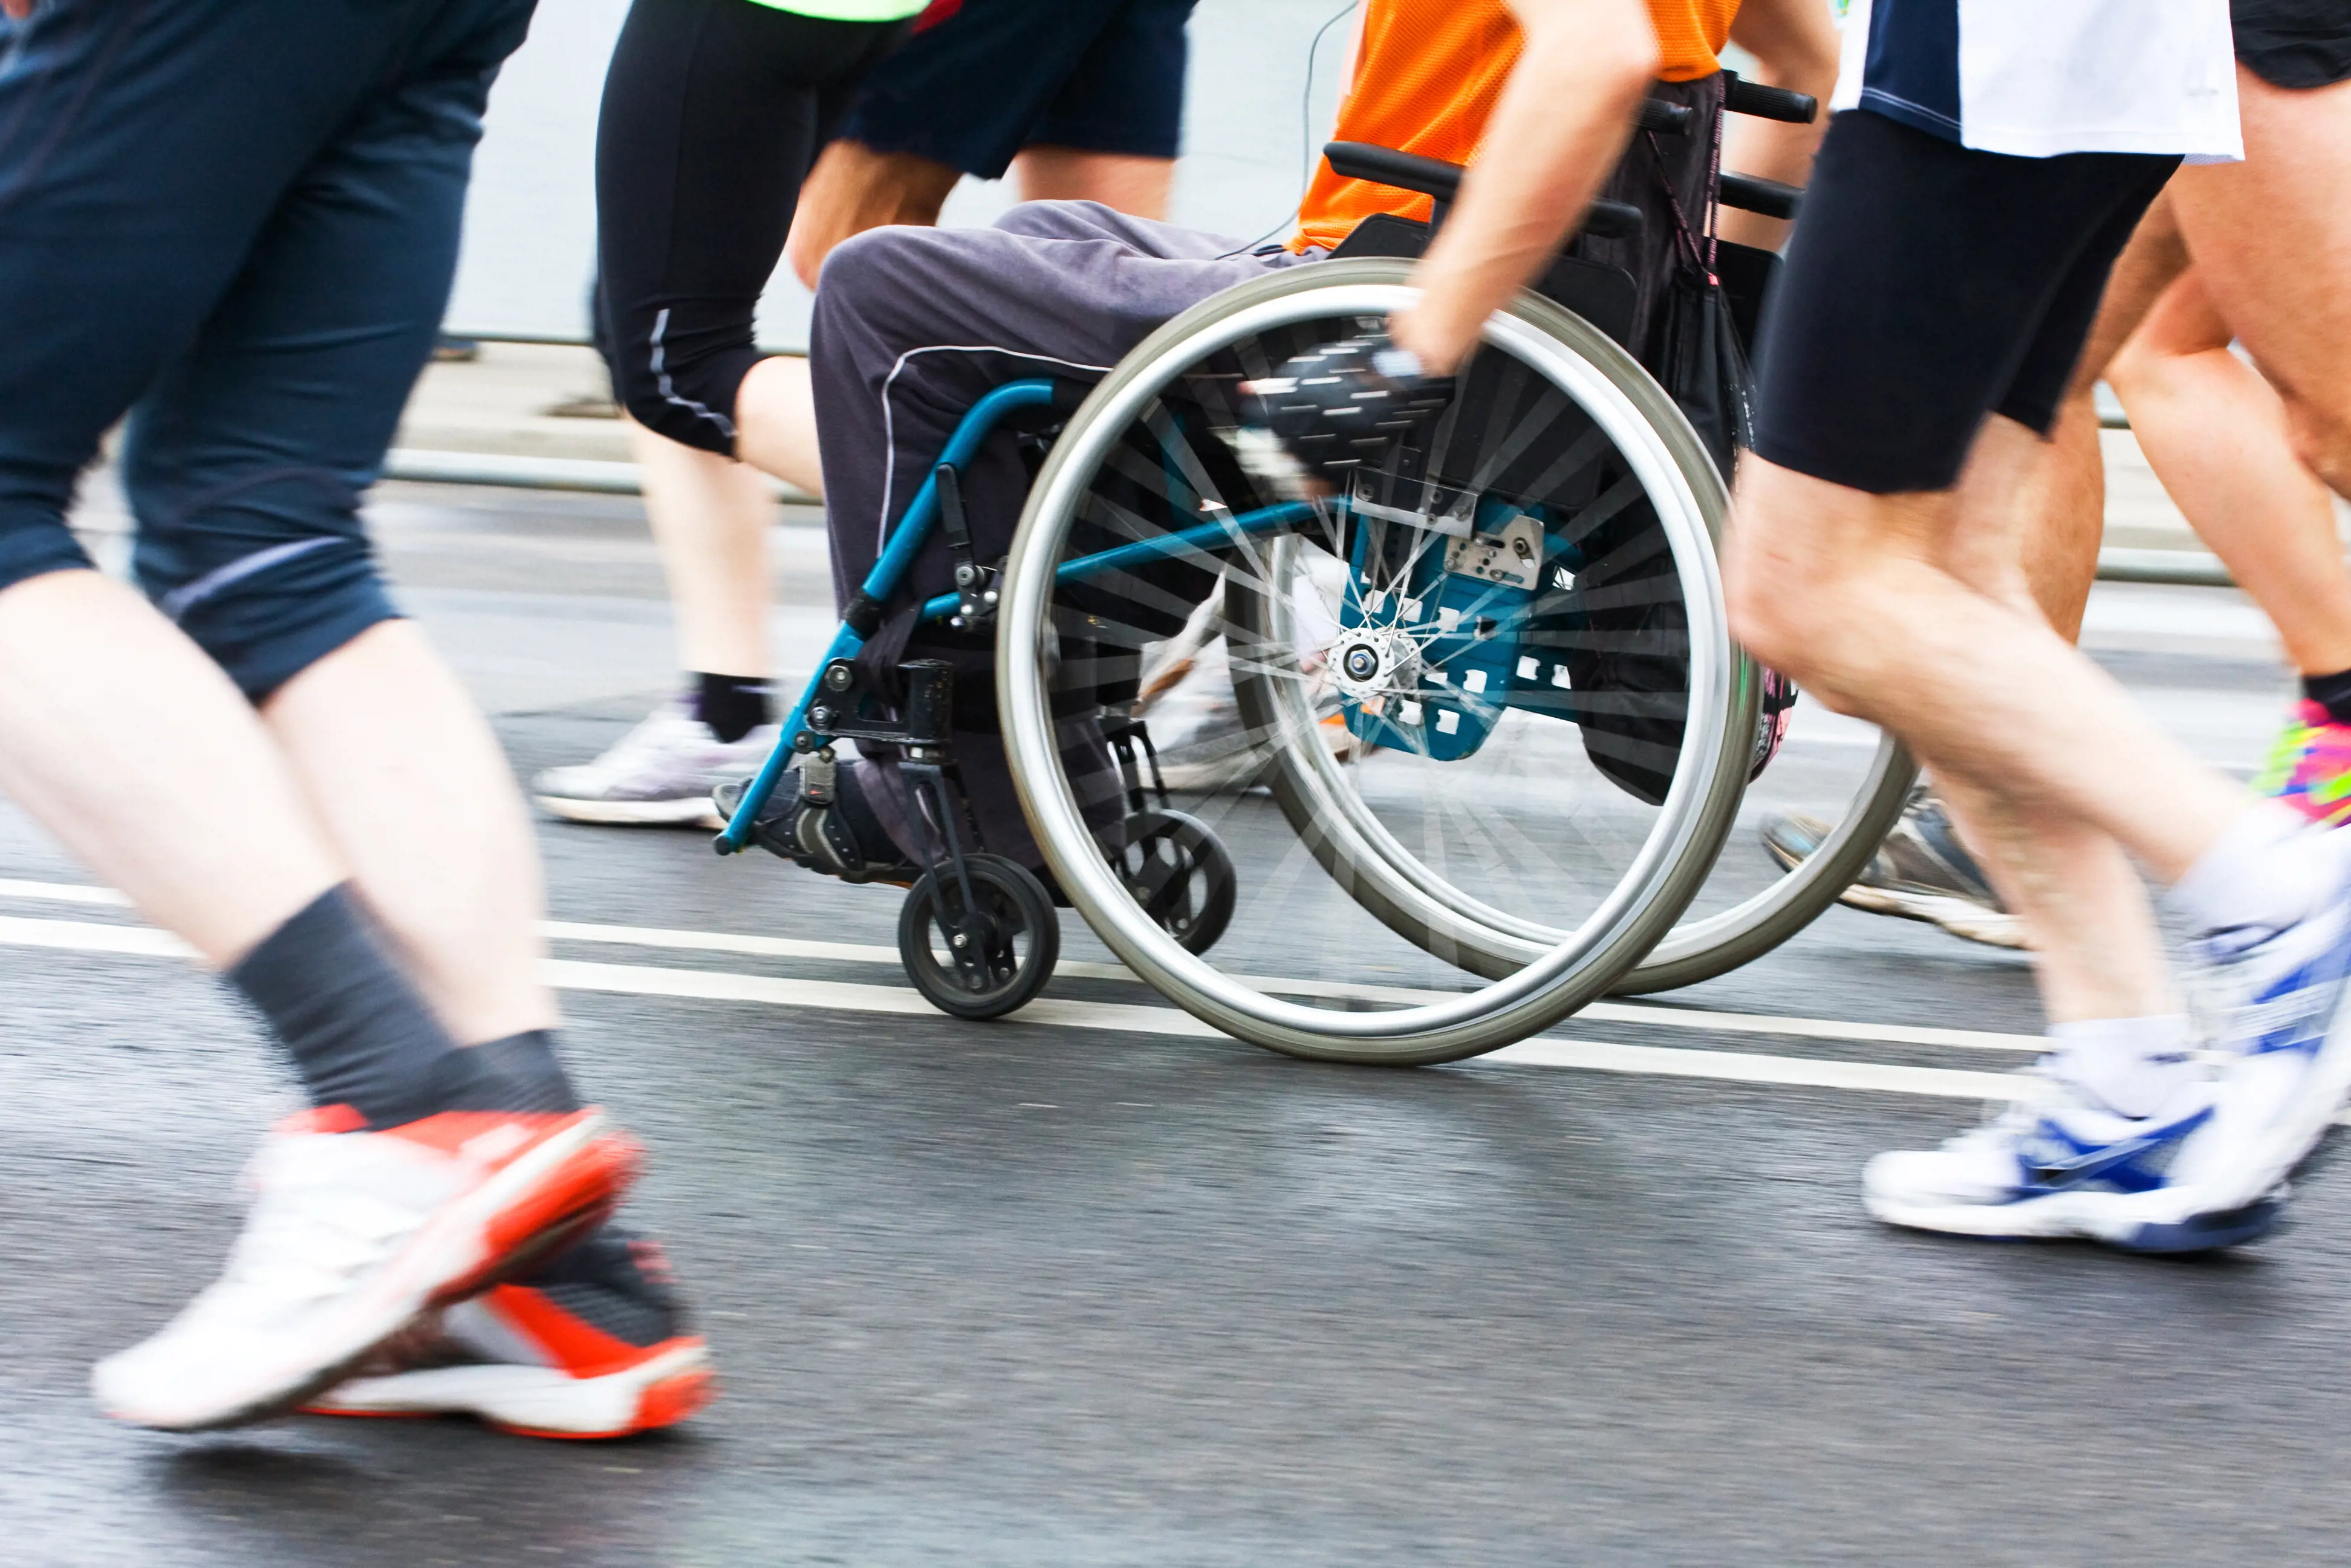 Personer med og uten rullestol i fysisk aktivitet